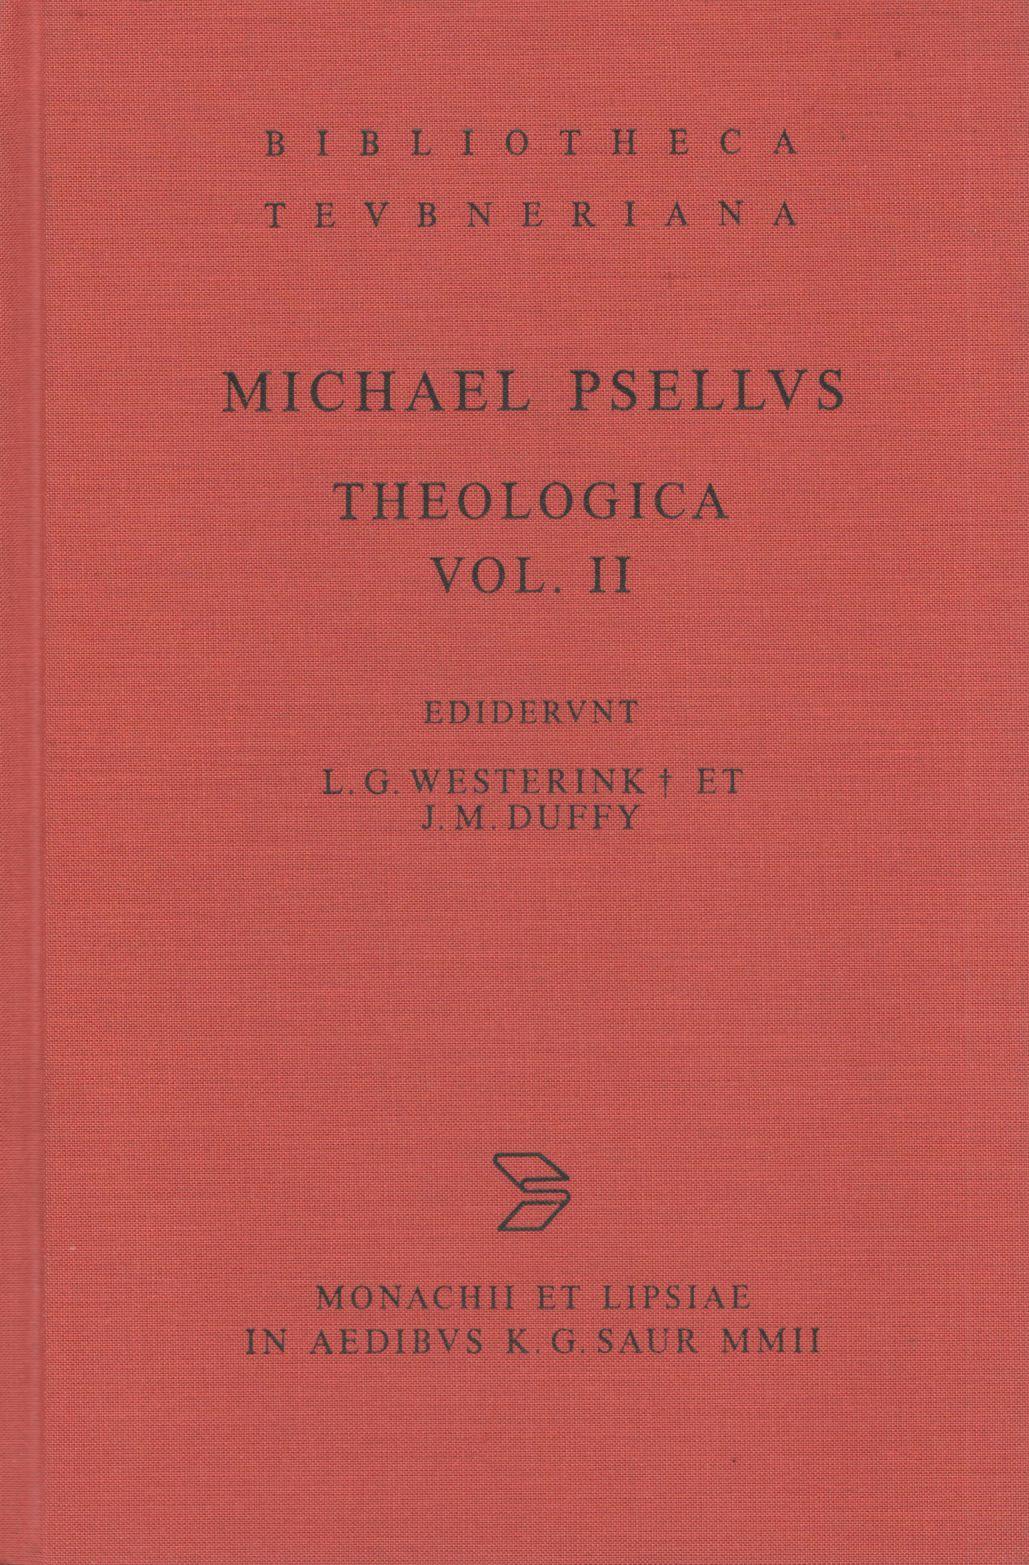 MICHAELIS PSELLI THEOLOGICA VOL. II